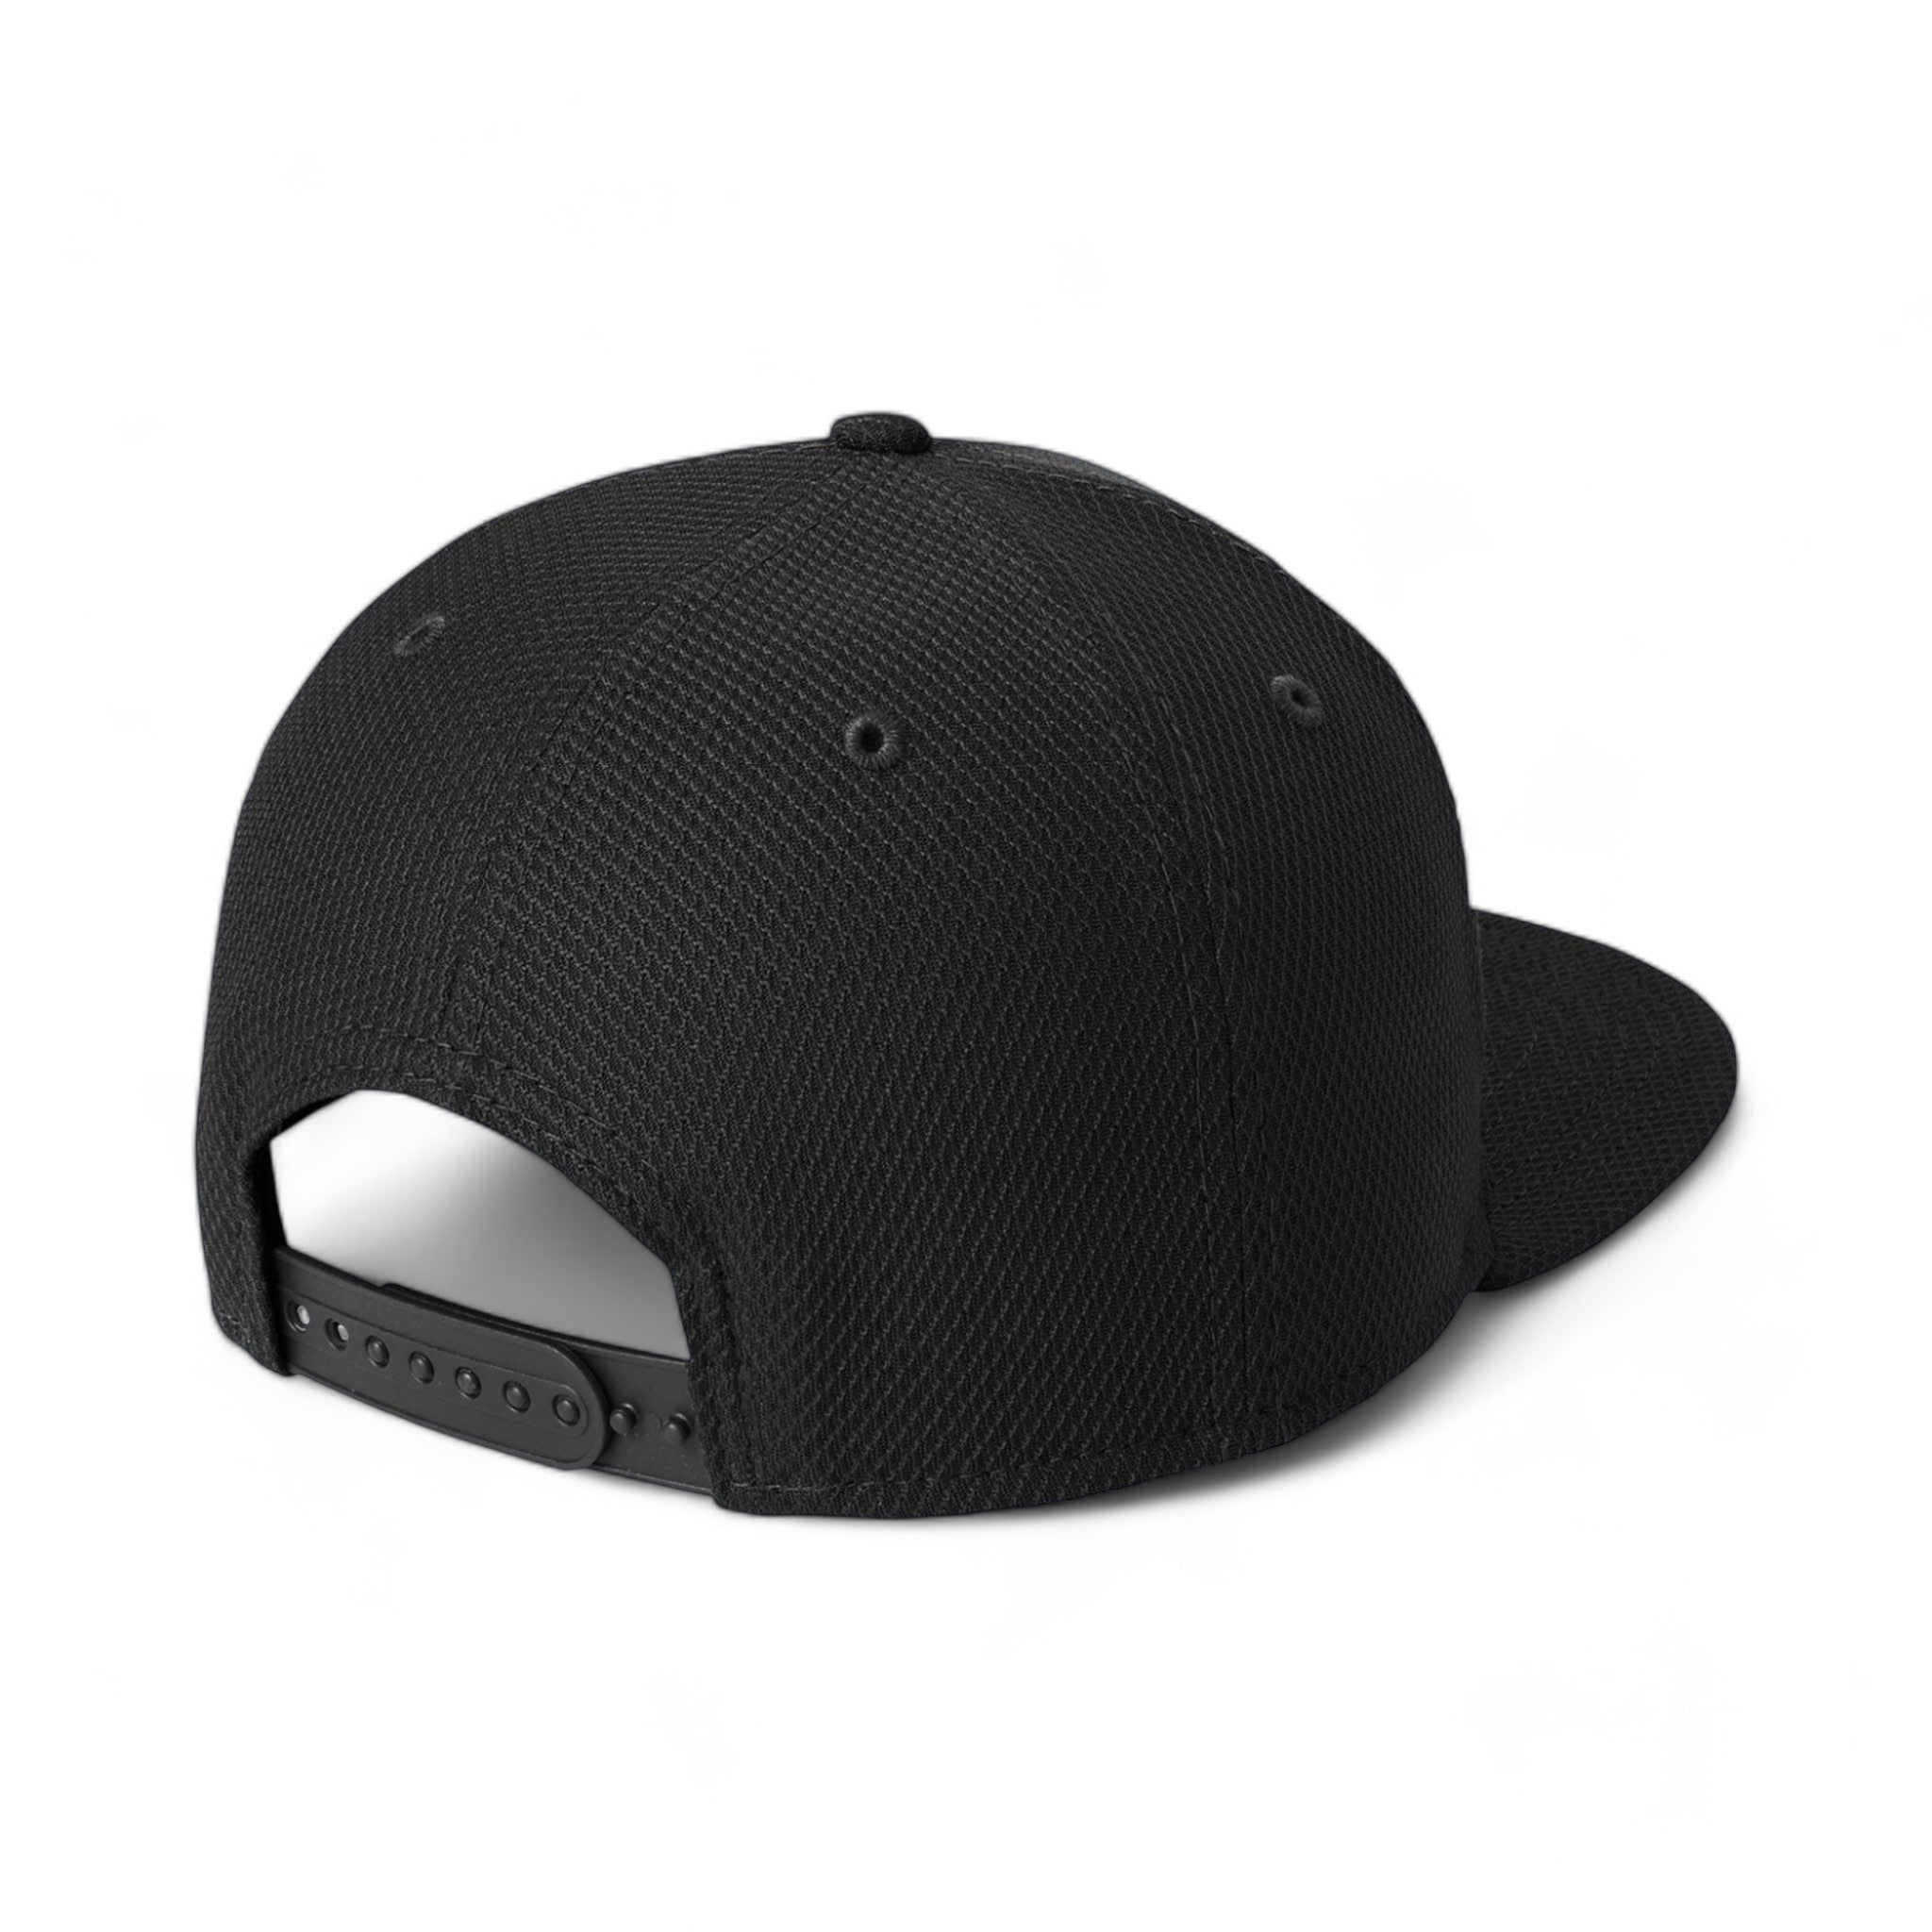 Back view of New Era NE404 custom hat in black